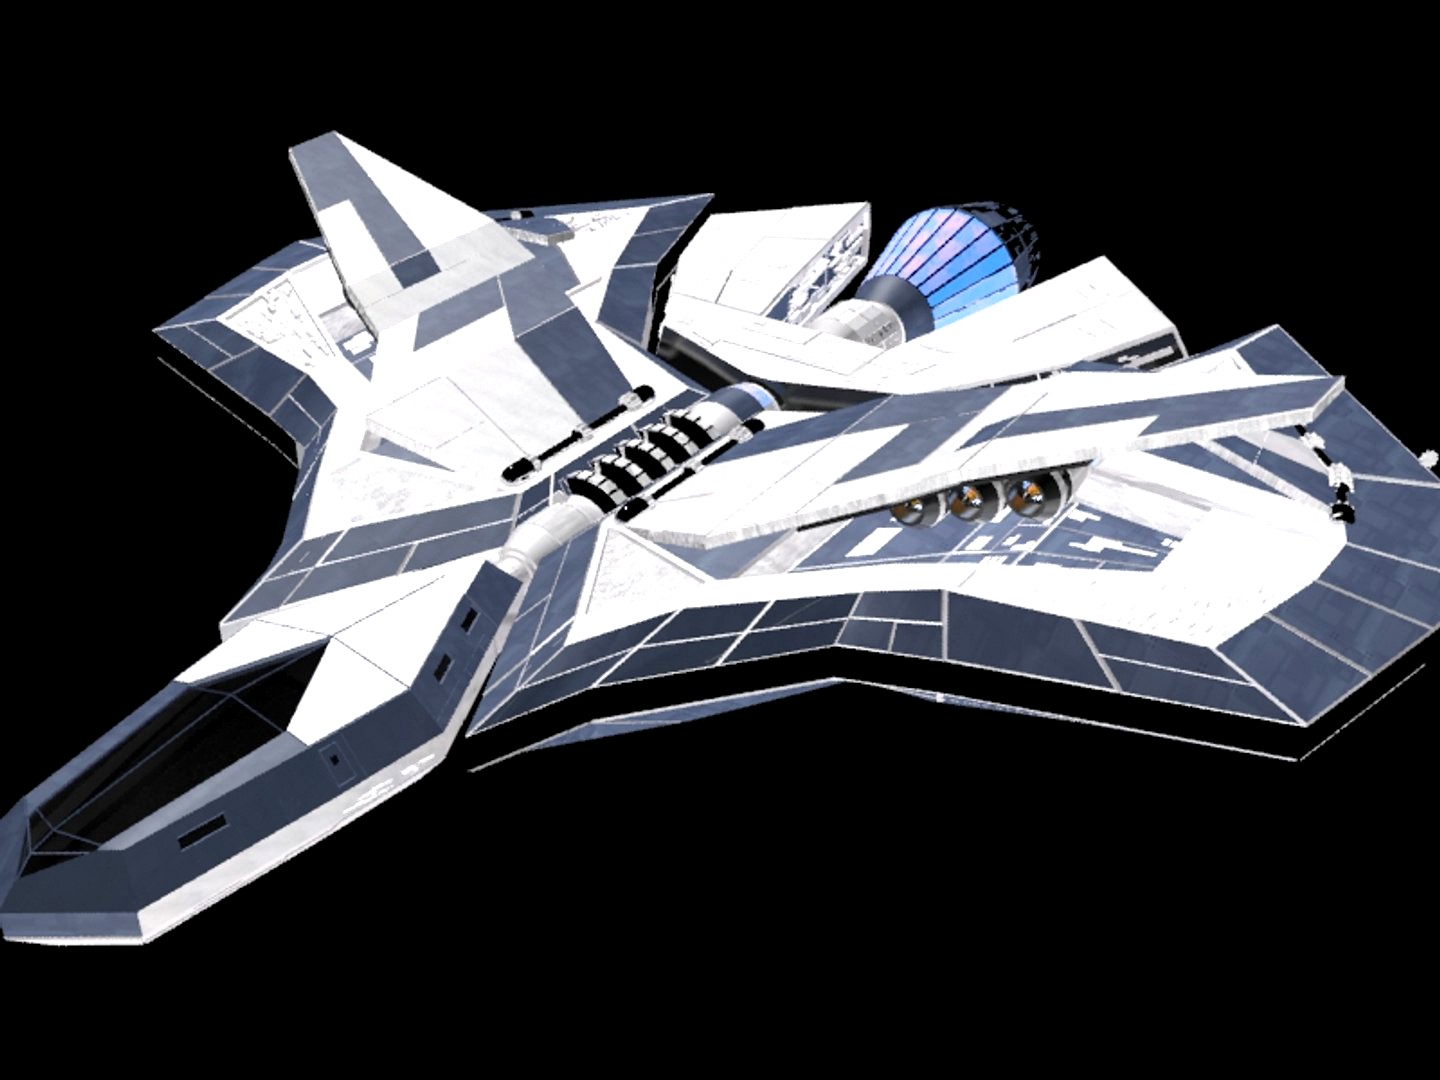 Lancer spaceship